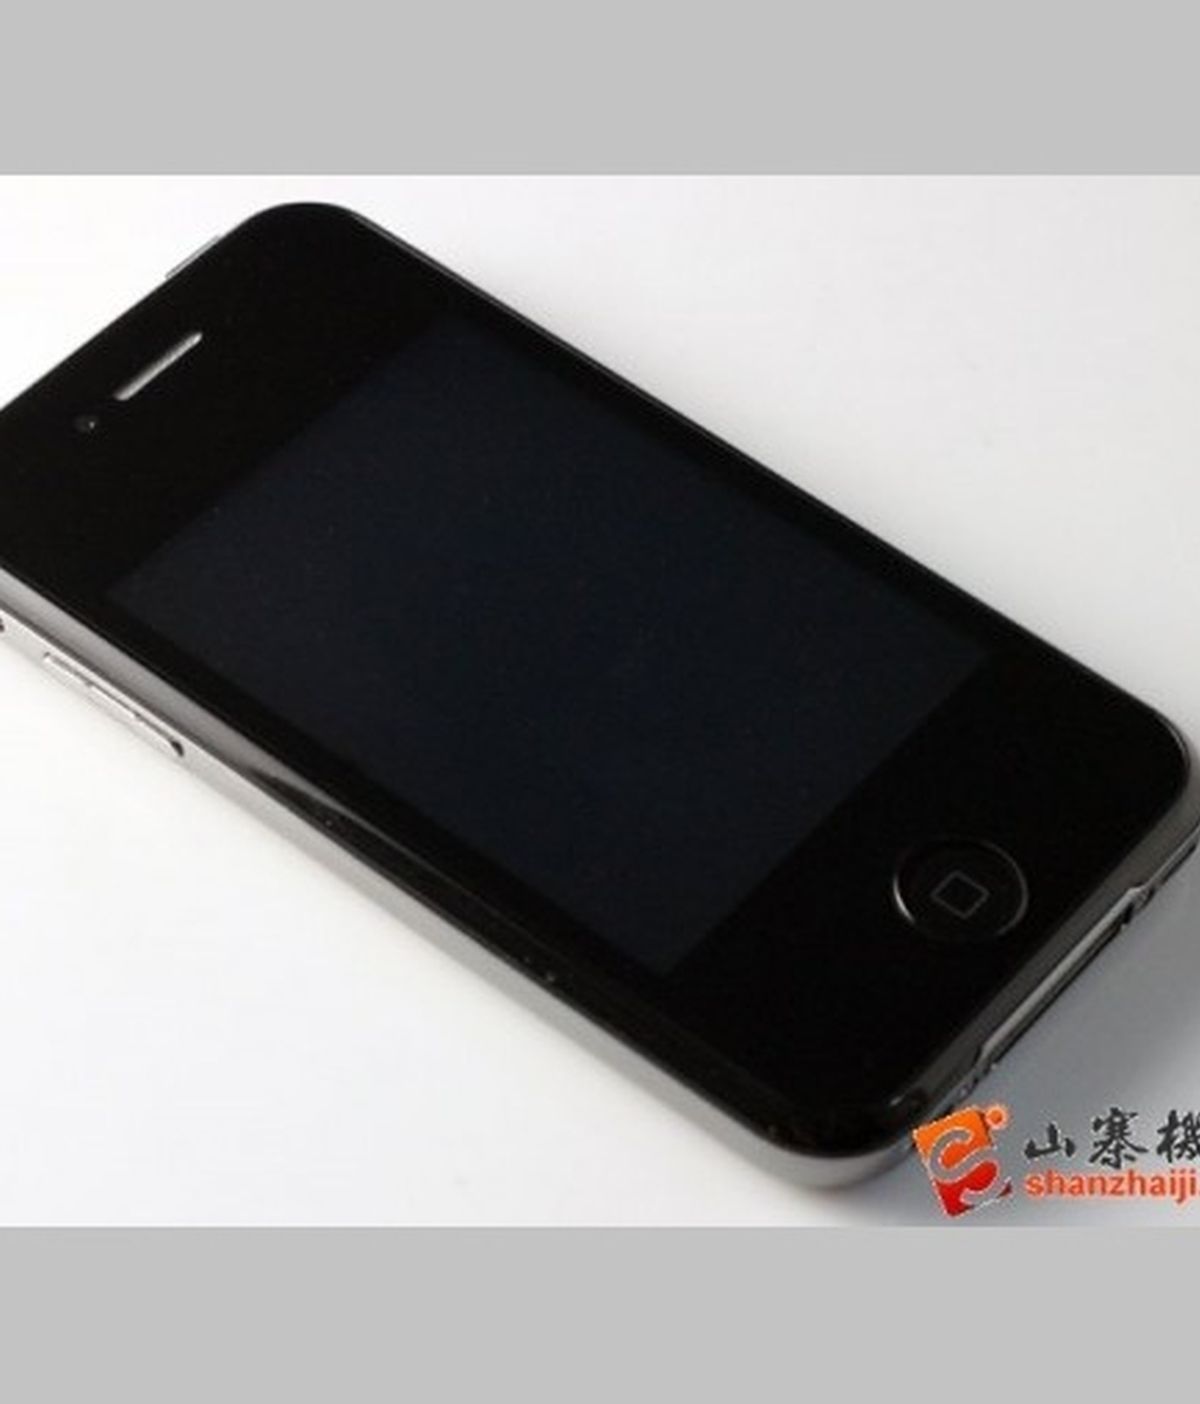 El 'smartphone' chino supuestamente tiene 64 GB de memoria interna y ya está a la venta en internet por 108 euros.